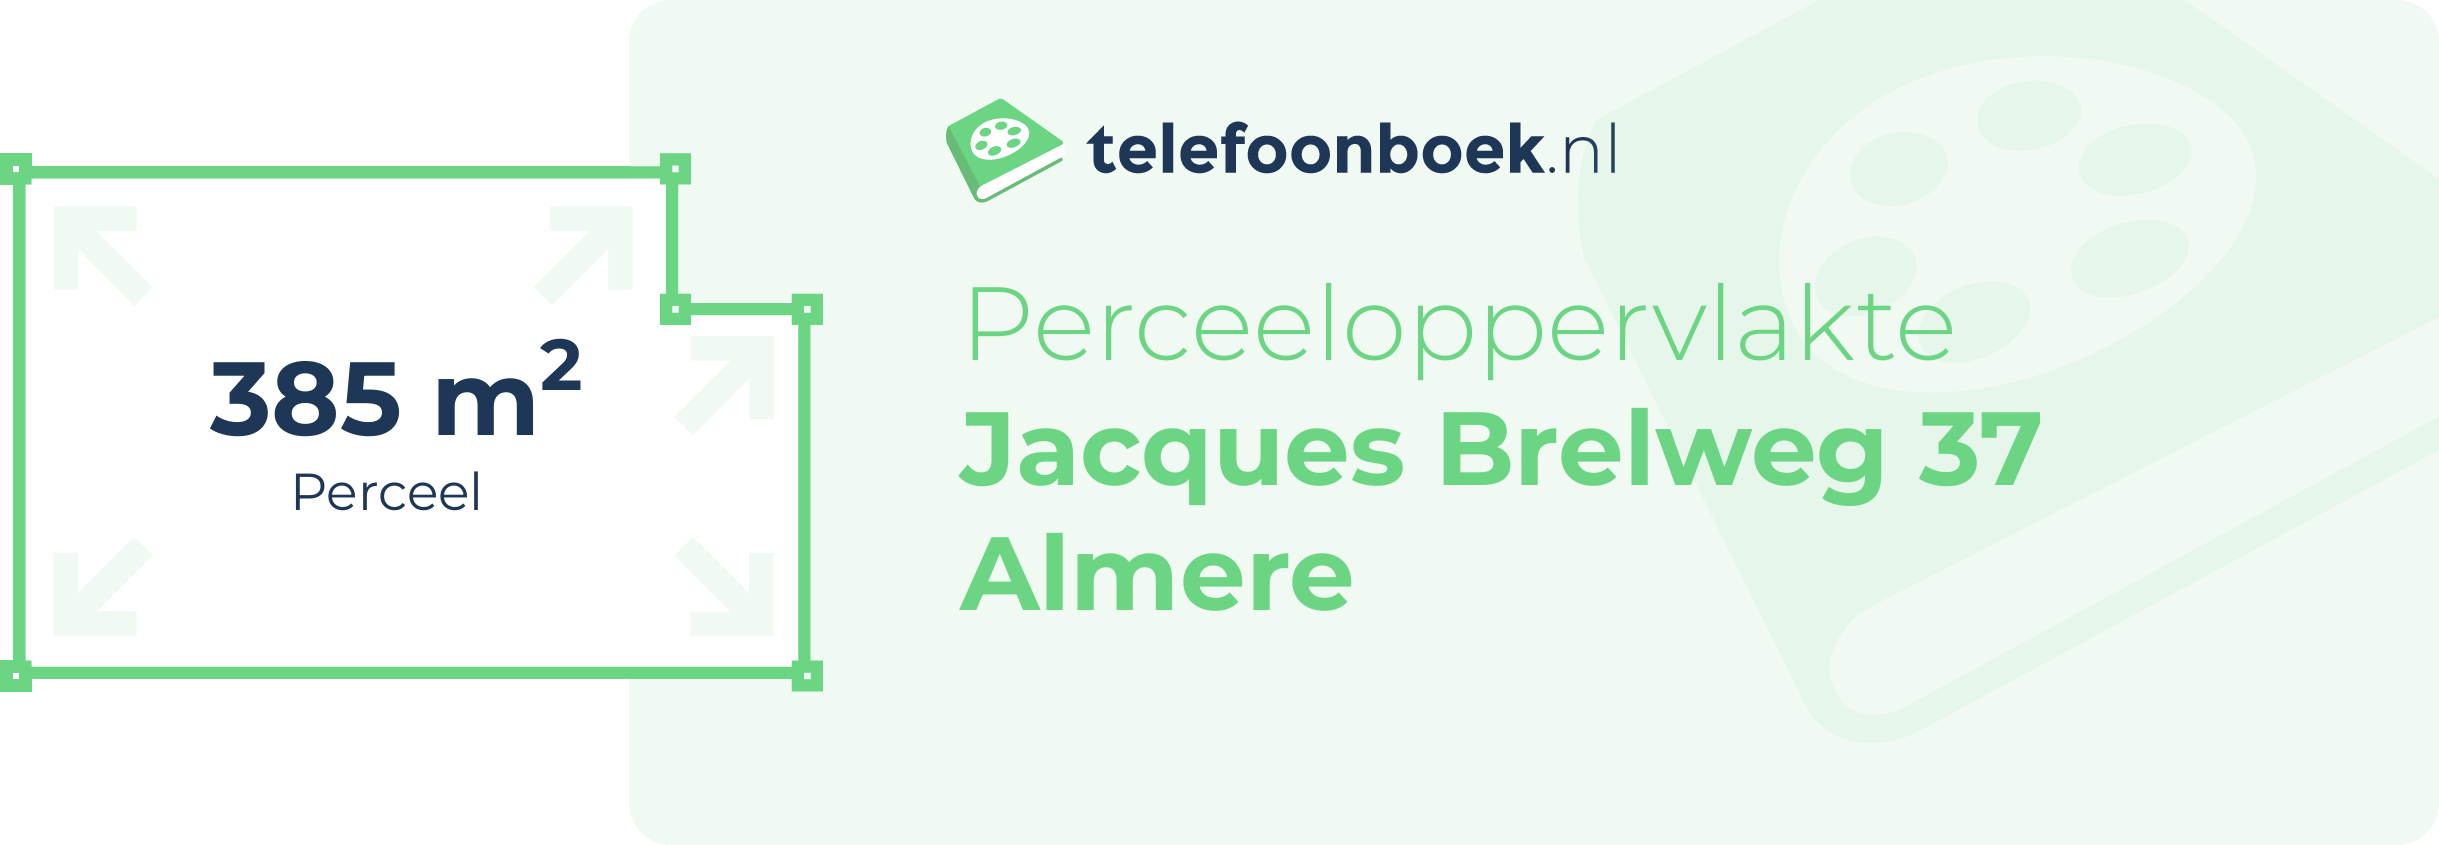 Perceeloppervlakte Jacques Brelweg 37 Almere